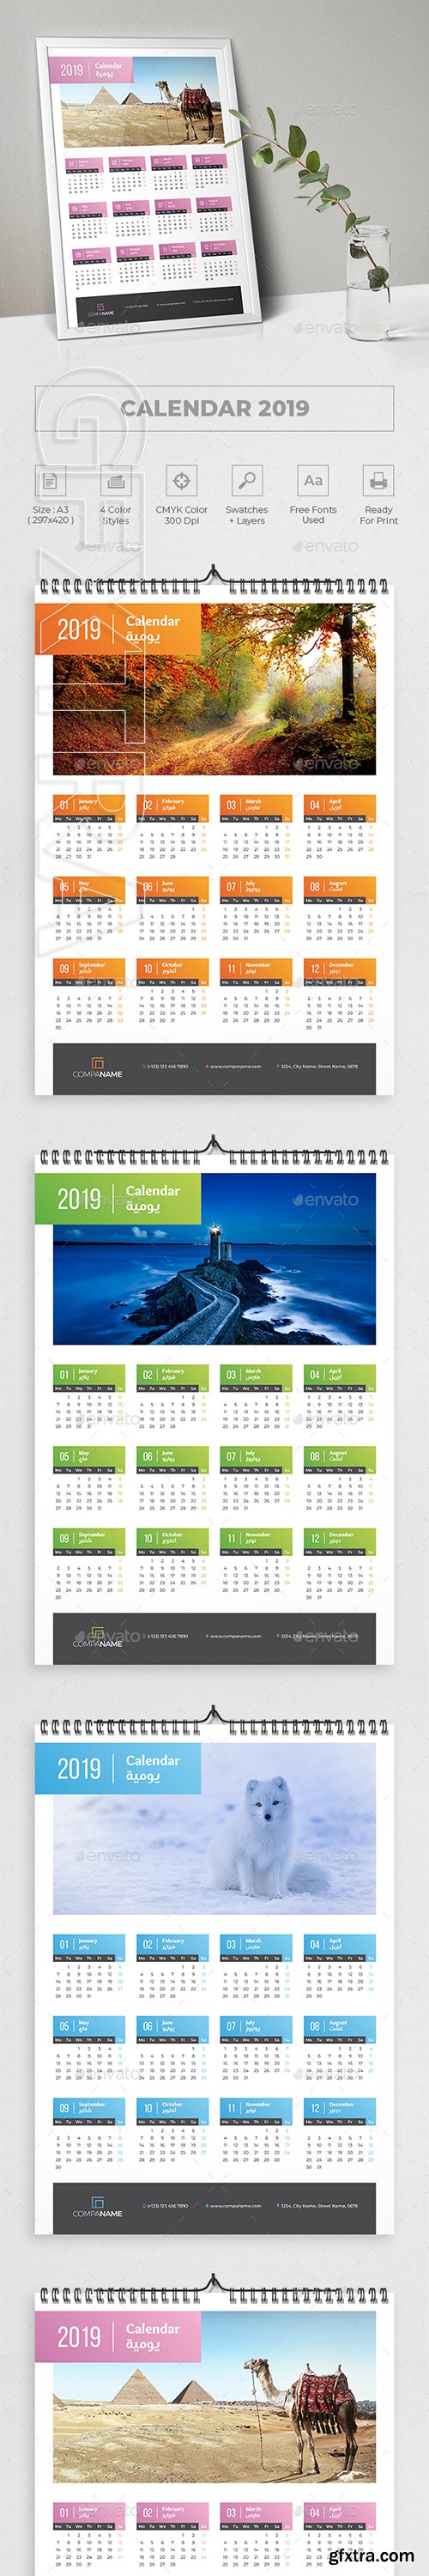 GraphicRiver - Calendar 2019 22893822